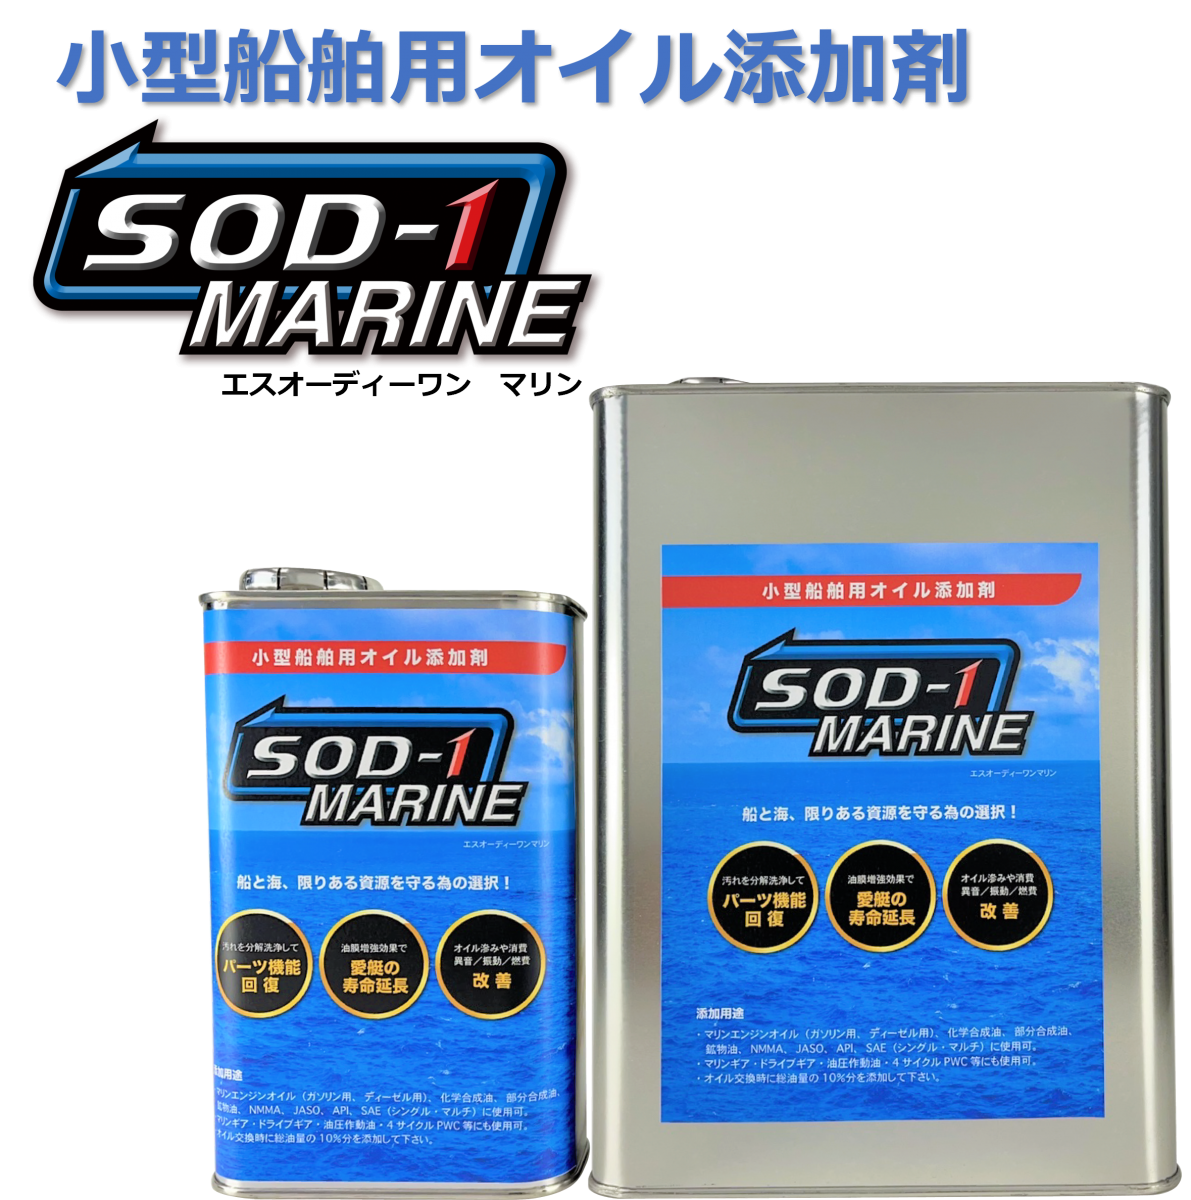 小型船舶用オイル添加剤 SOD-1 MARINEと"W使用"で更なる予防へ